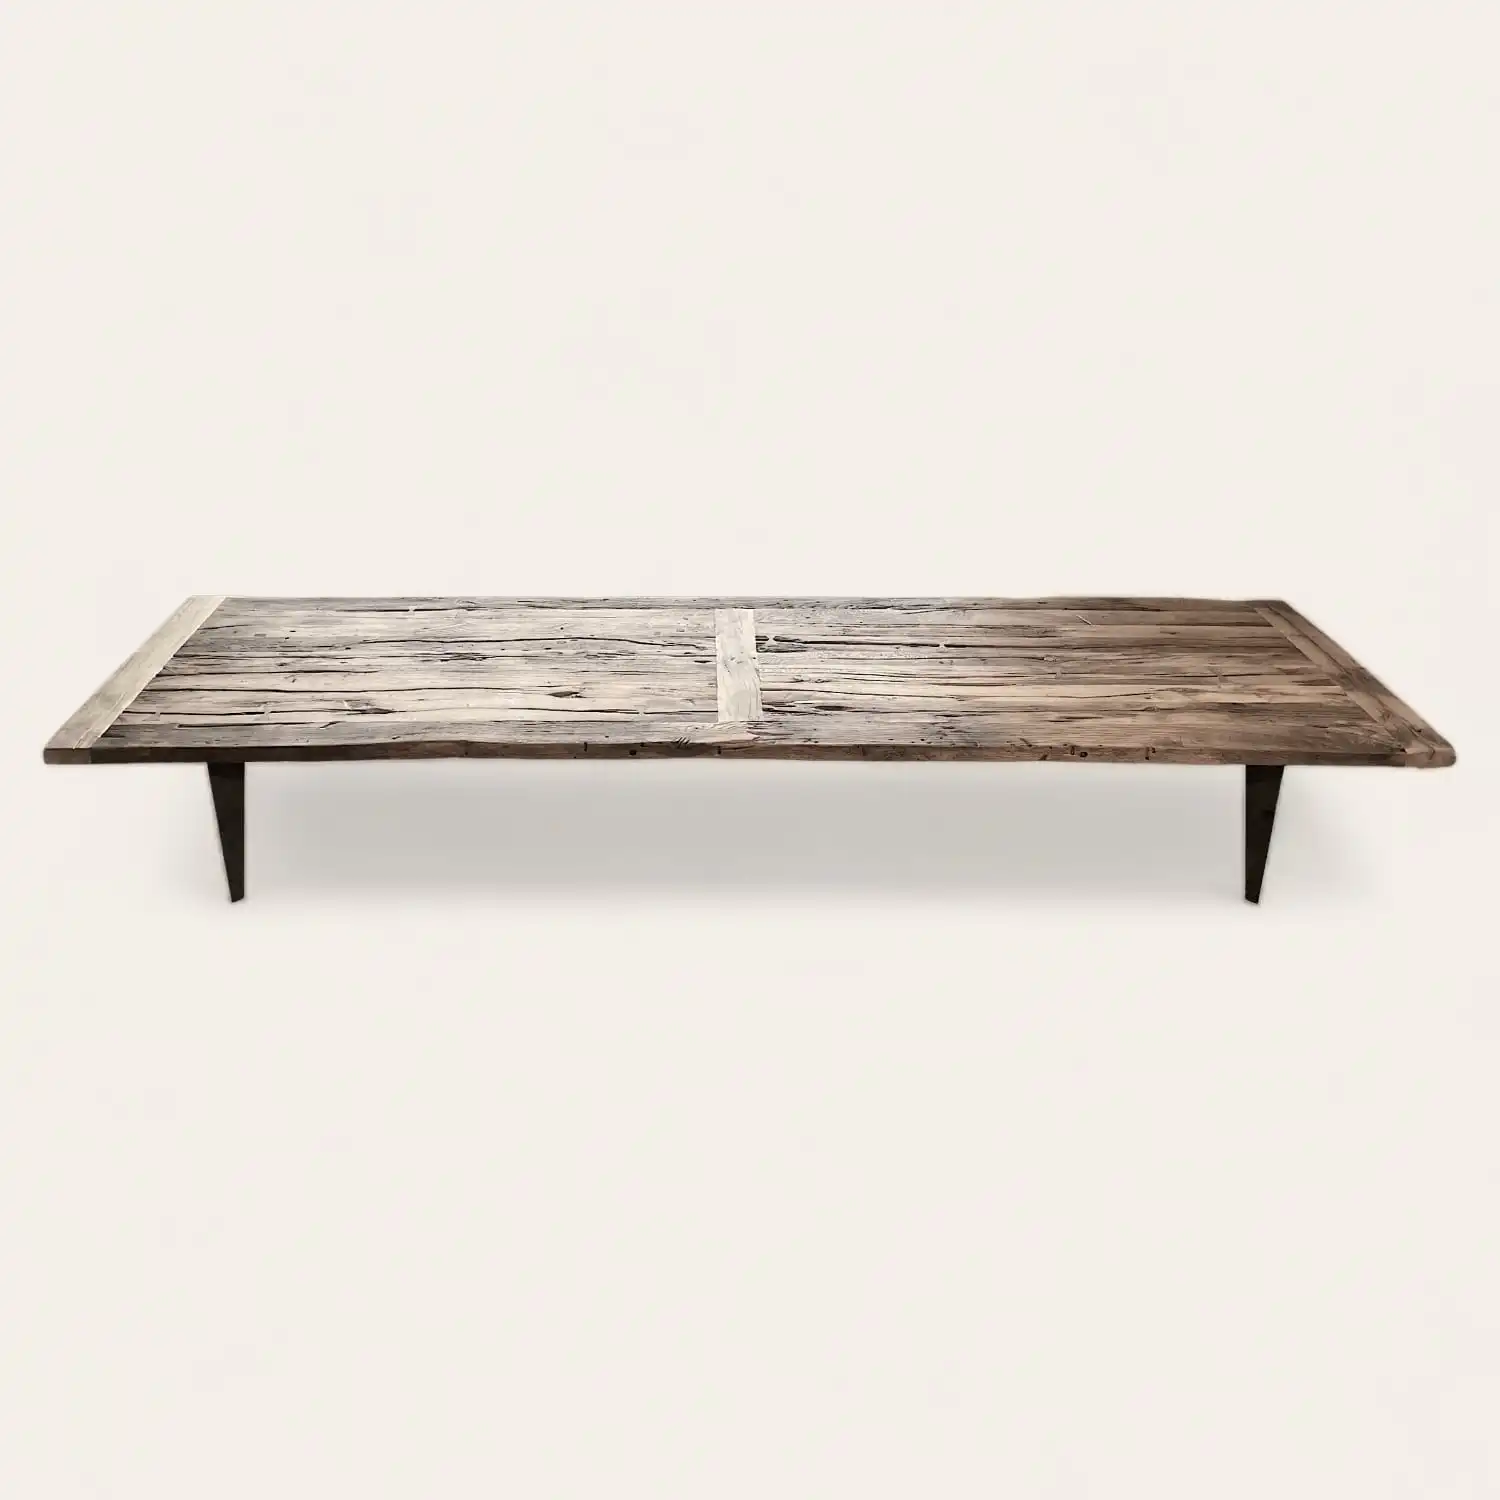  Longue table de style fermette en bois récupéré avec des jambes fines, affichant une patine naturellement vieillie et des détails rustiques. 